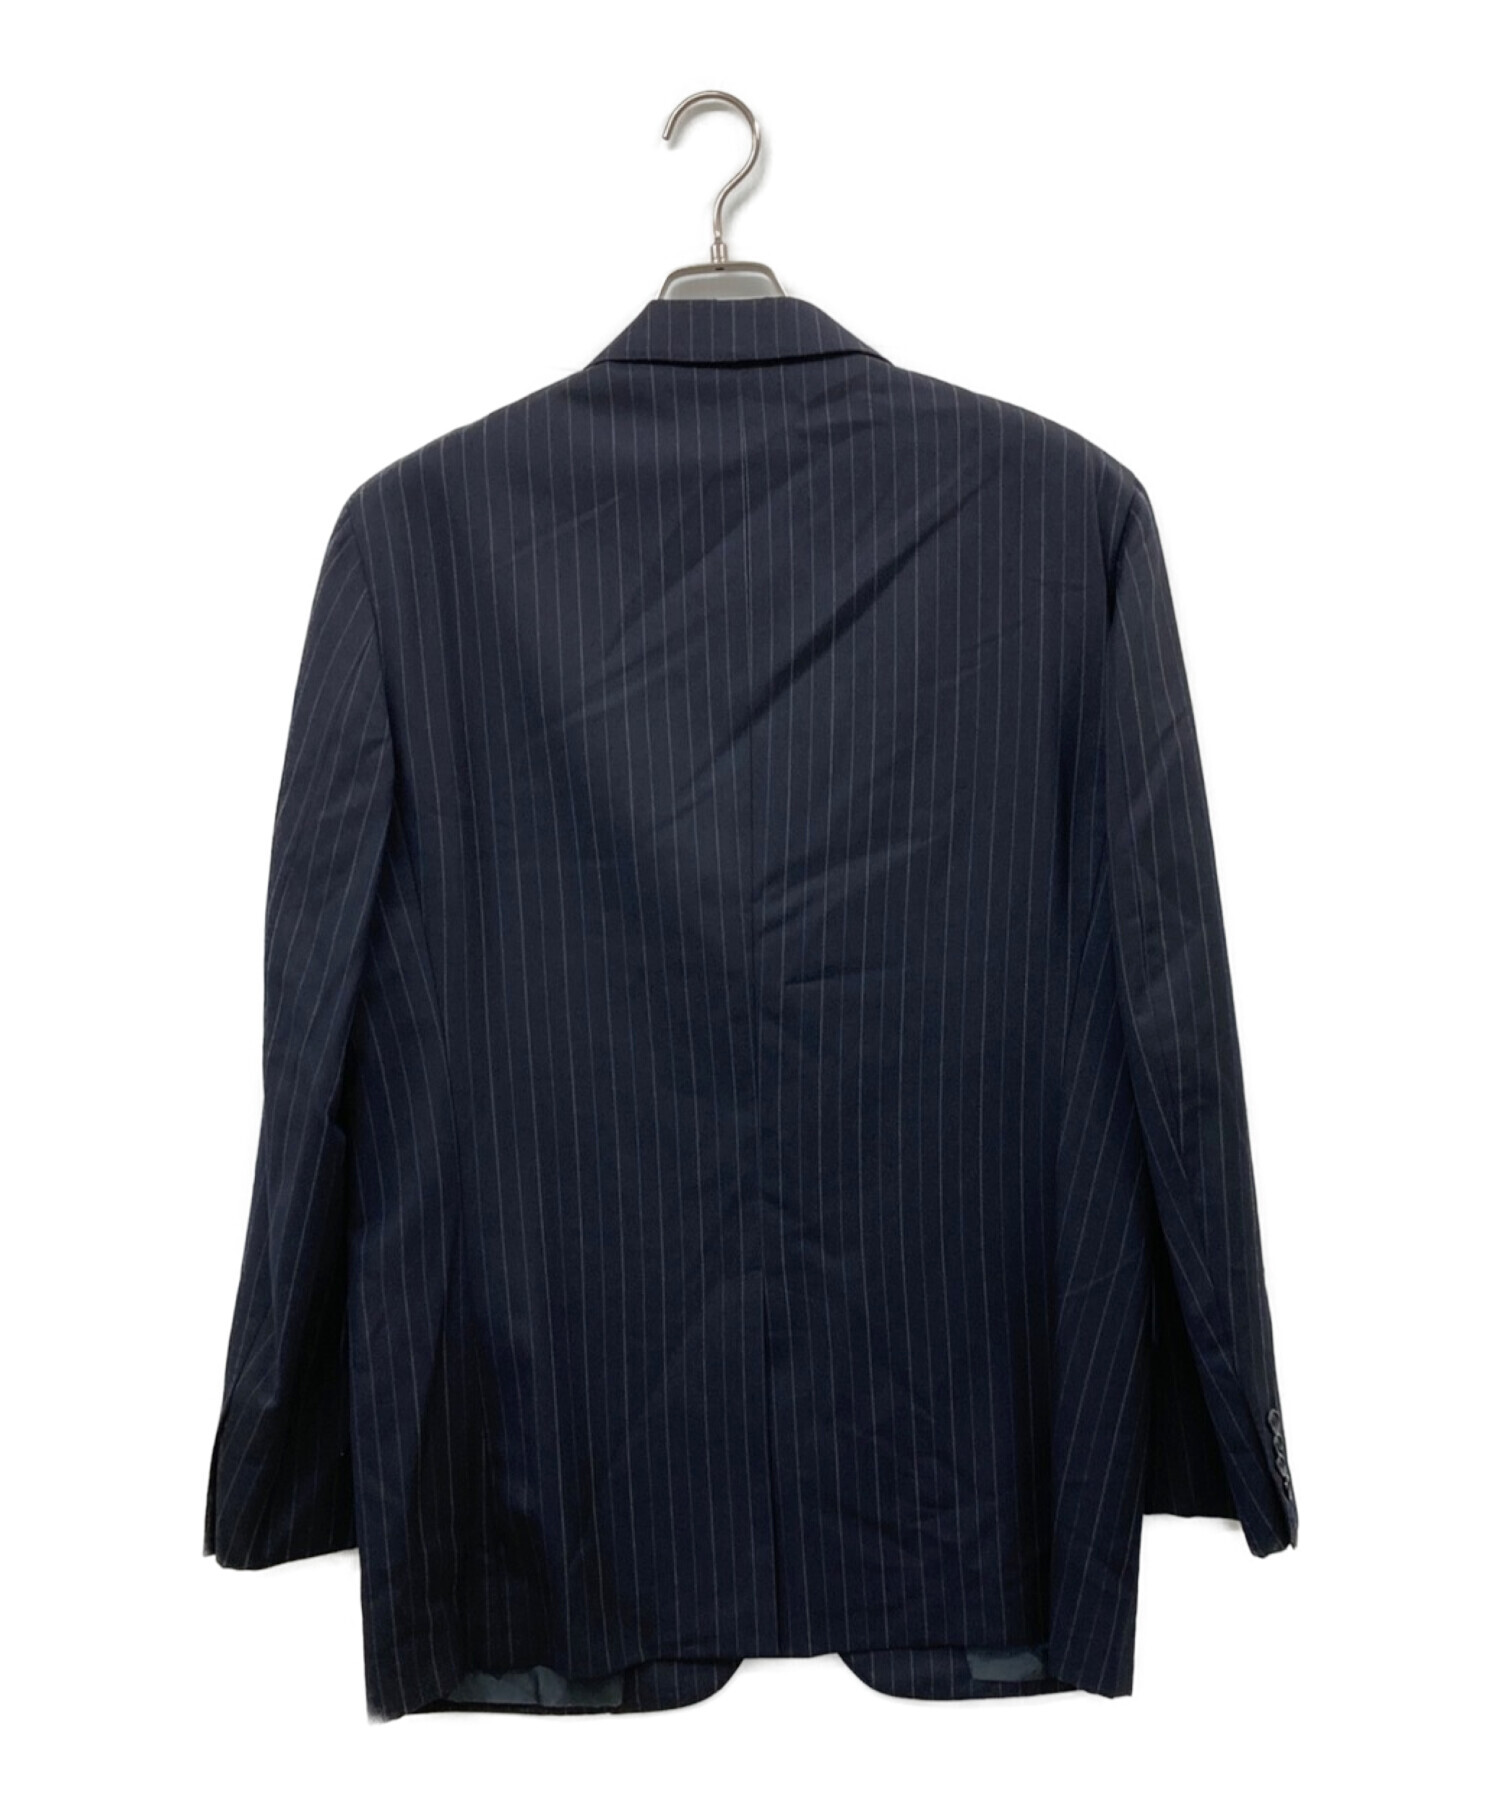 GIVENCHY (ジバンシィ) ウール3Bスーツ ネイビー サイズ:50